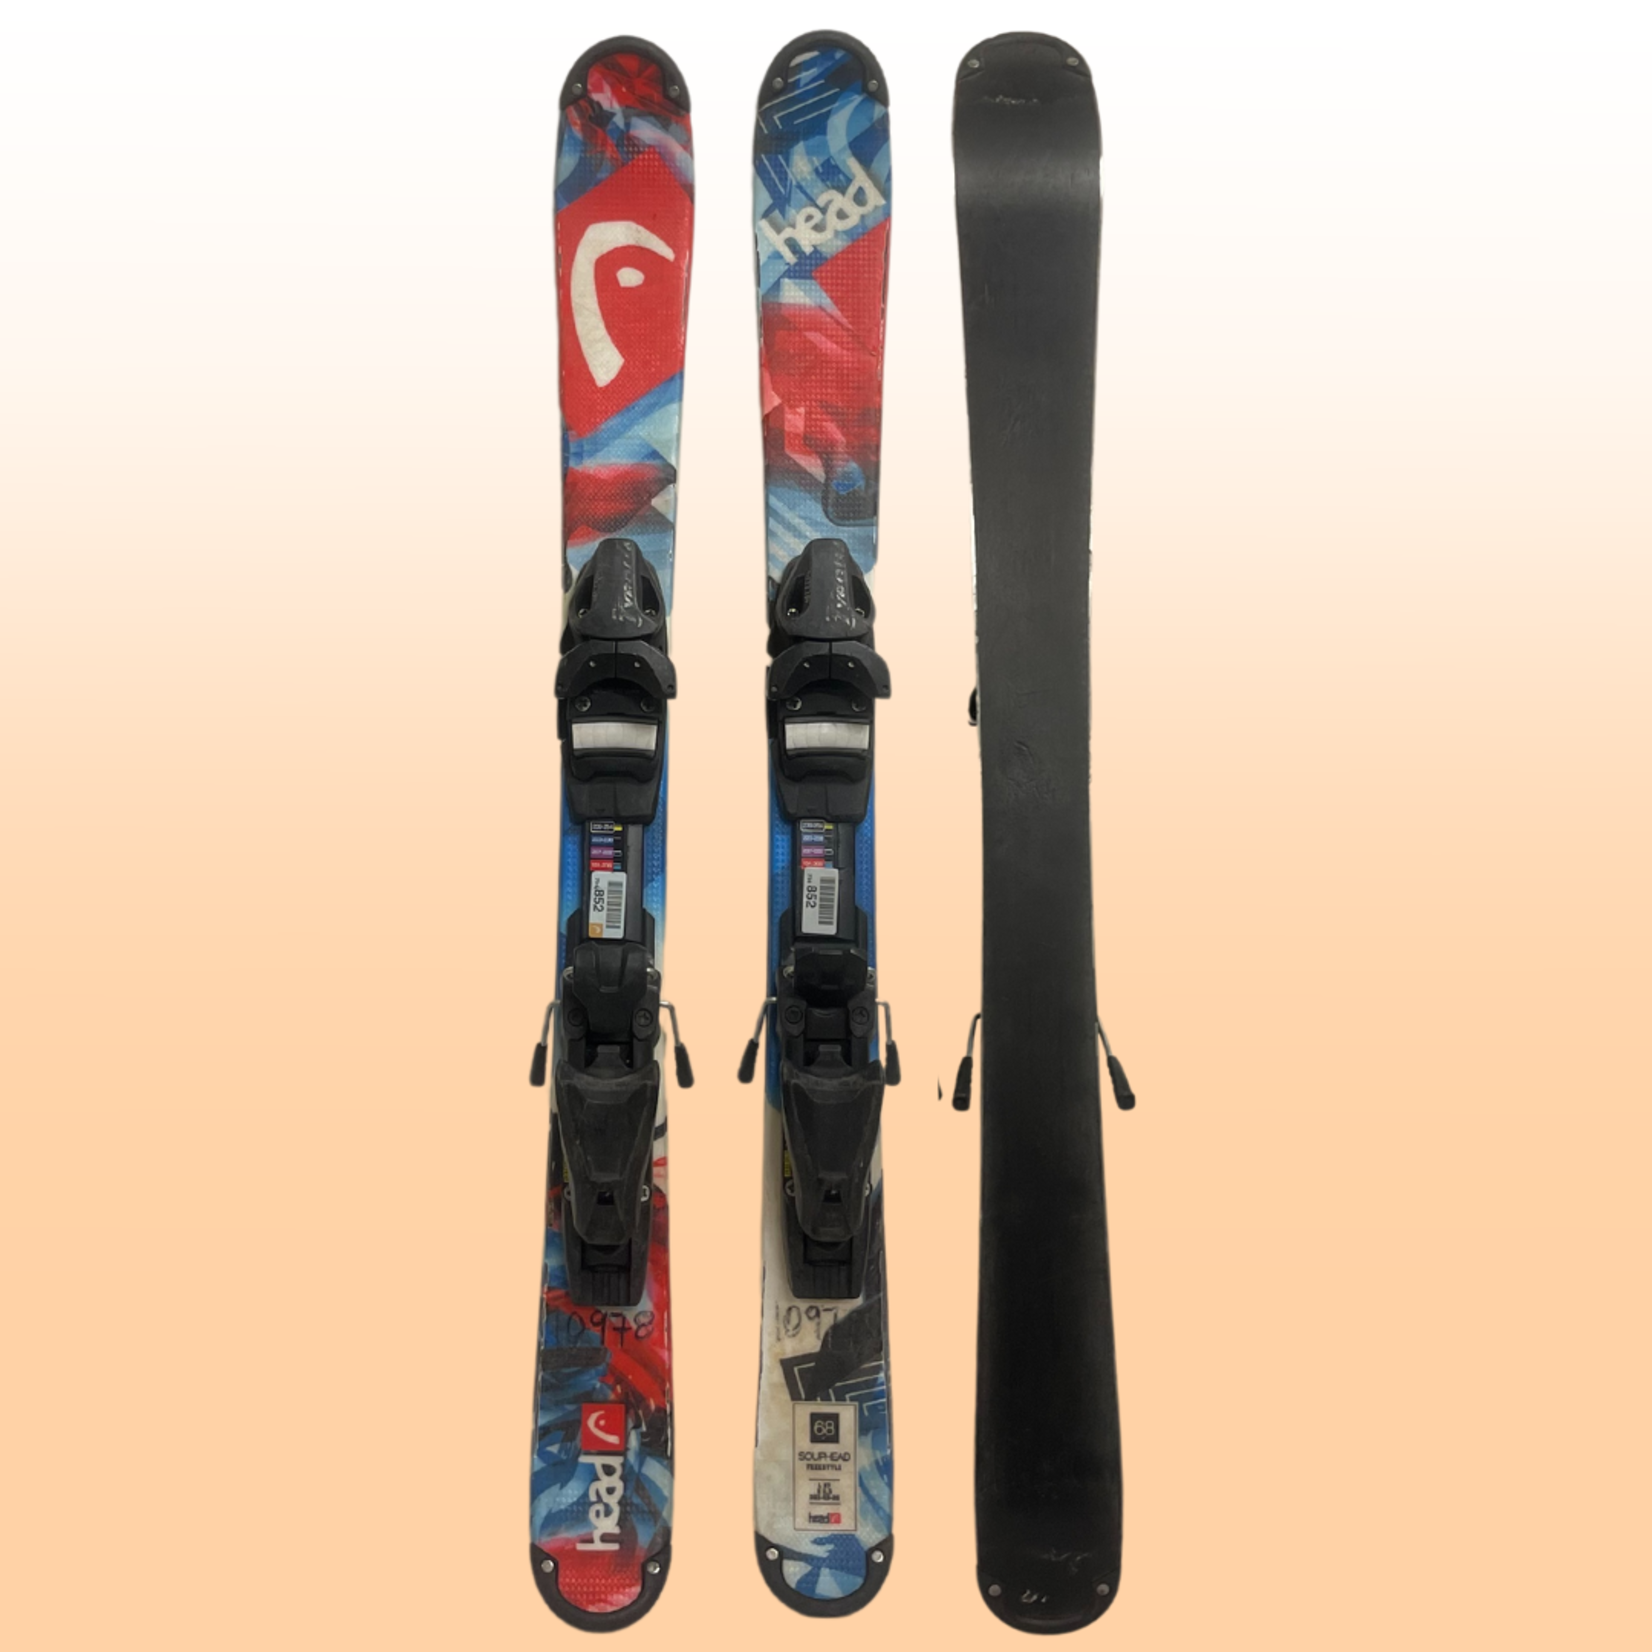 Head Head Souphead Twin Tip Kids Skis, Size 68cm